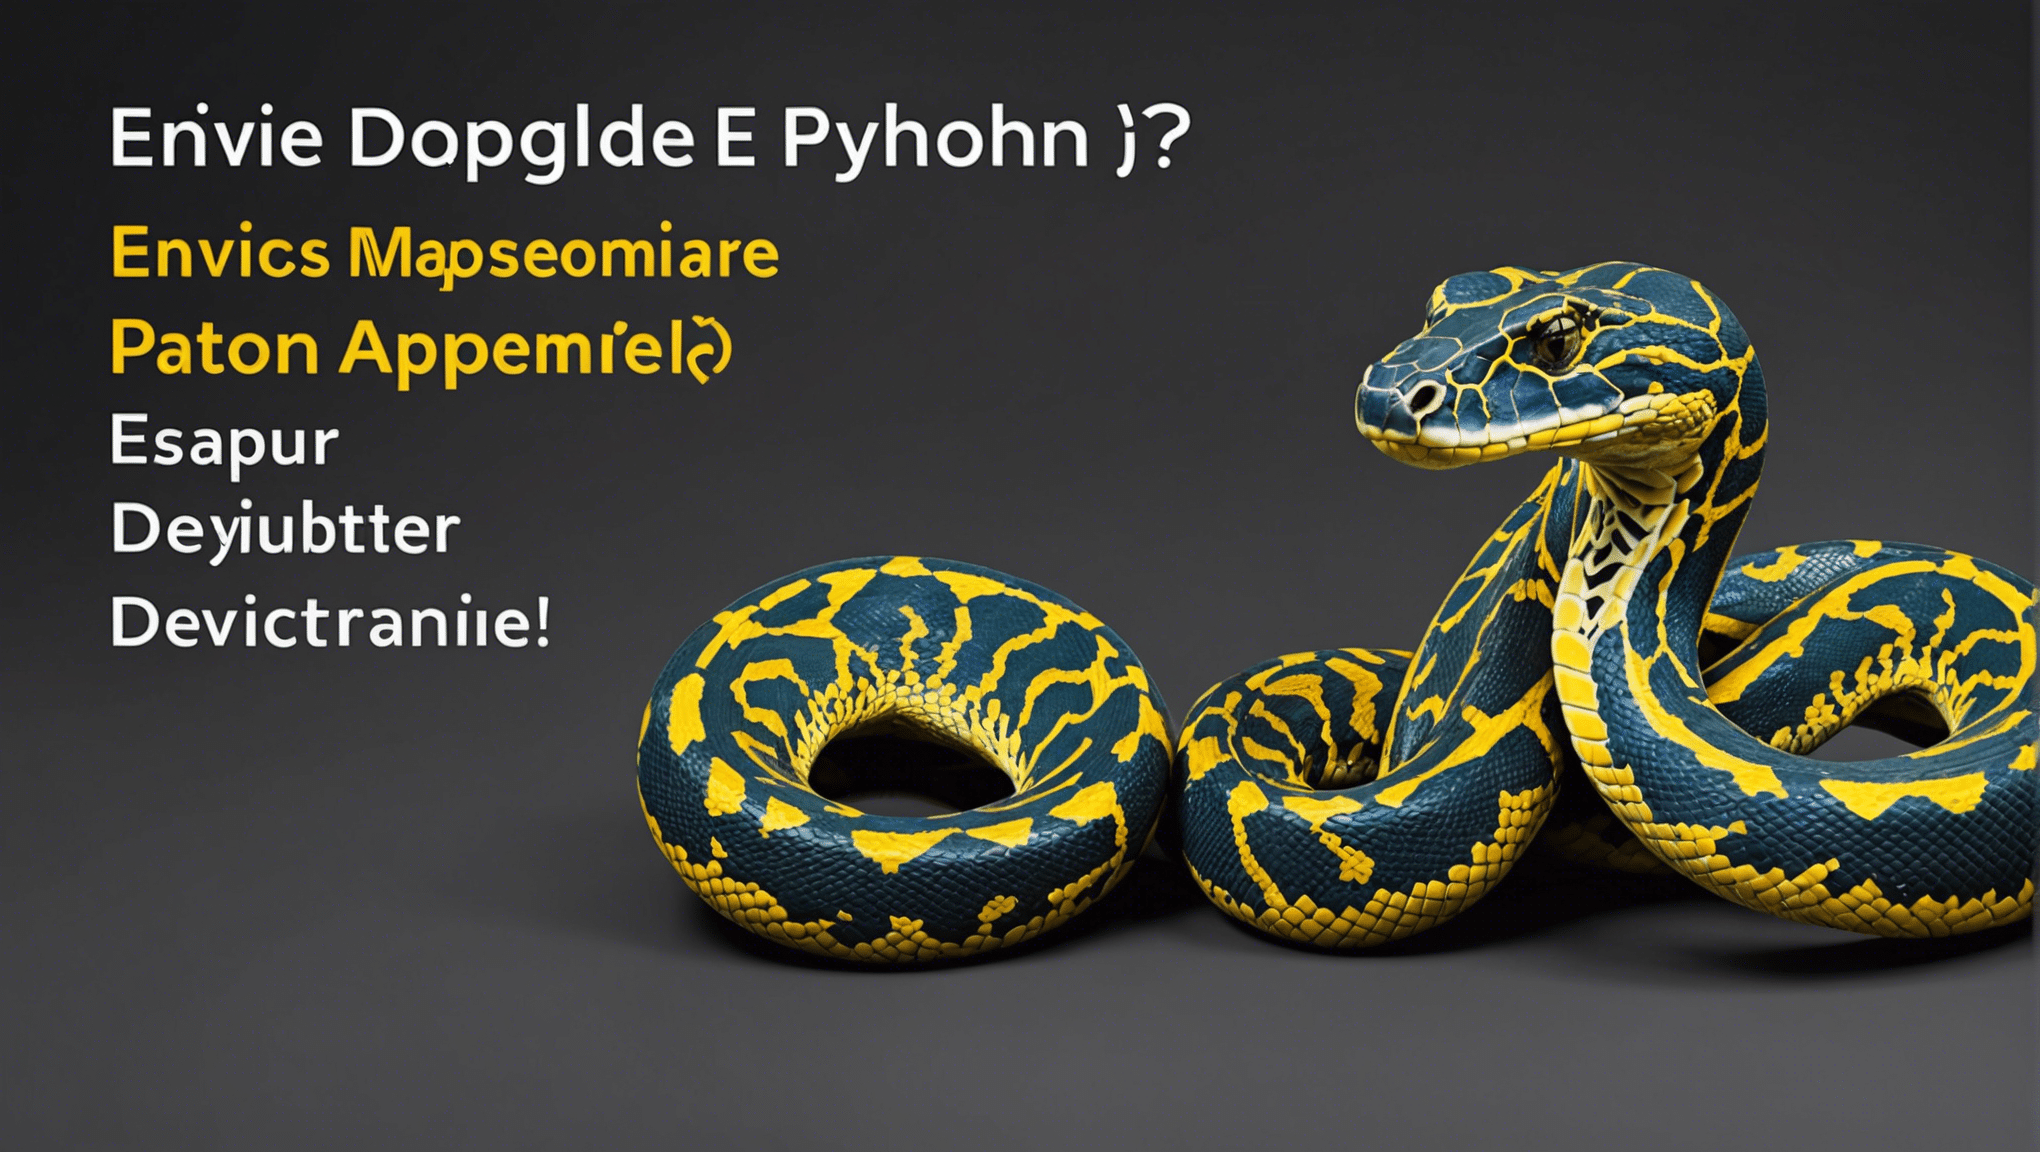 envie d'apprendre le python ? découvrez le meilleur programme pour débuter dans ce langage de programmation populaire et puissant !